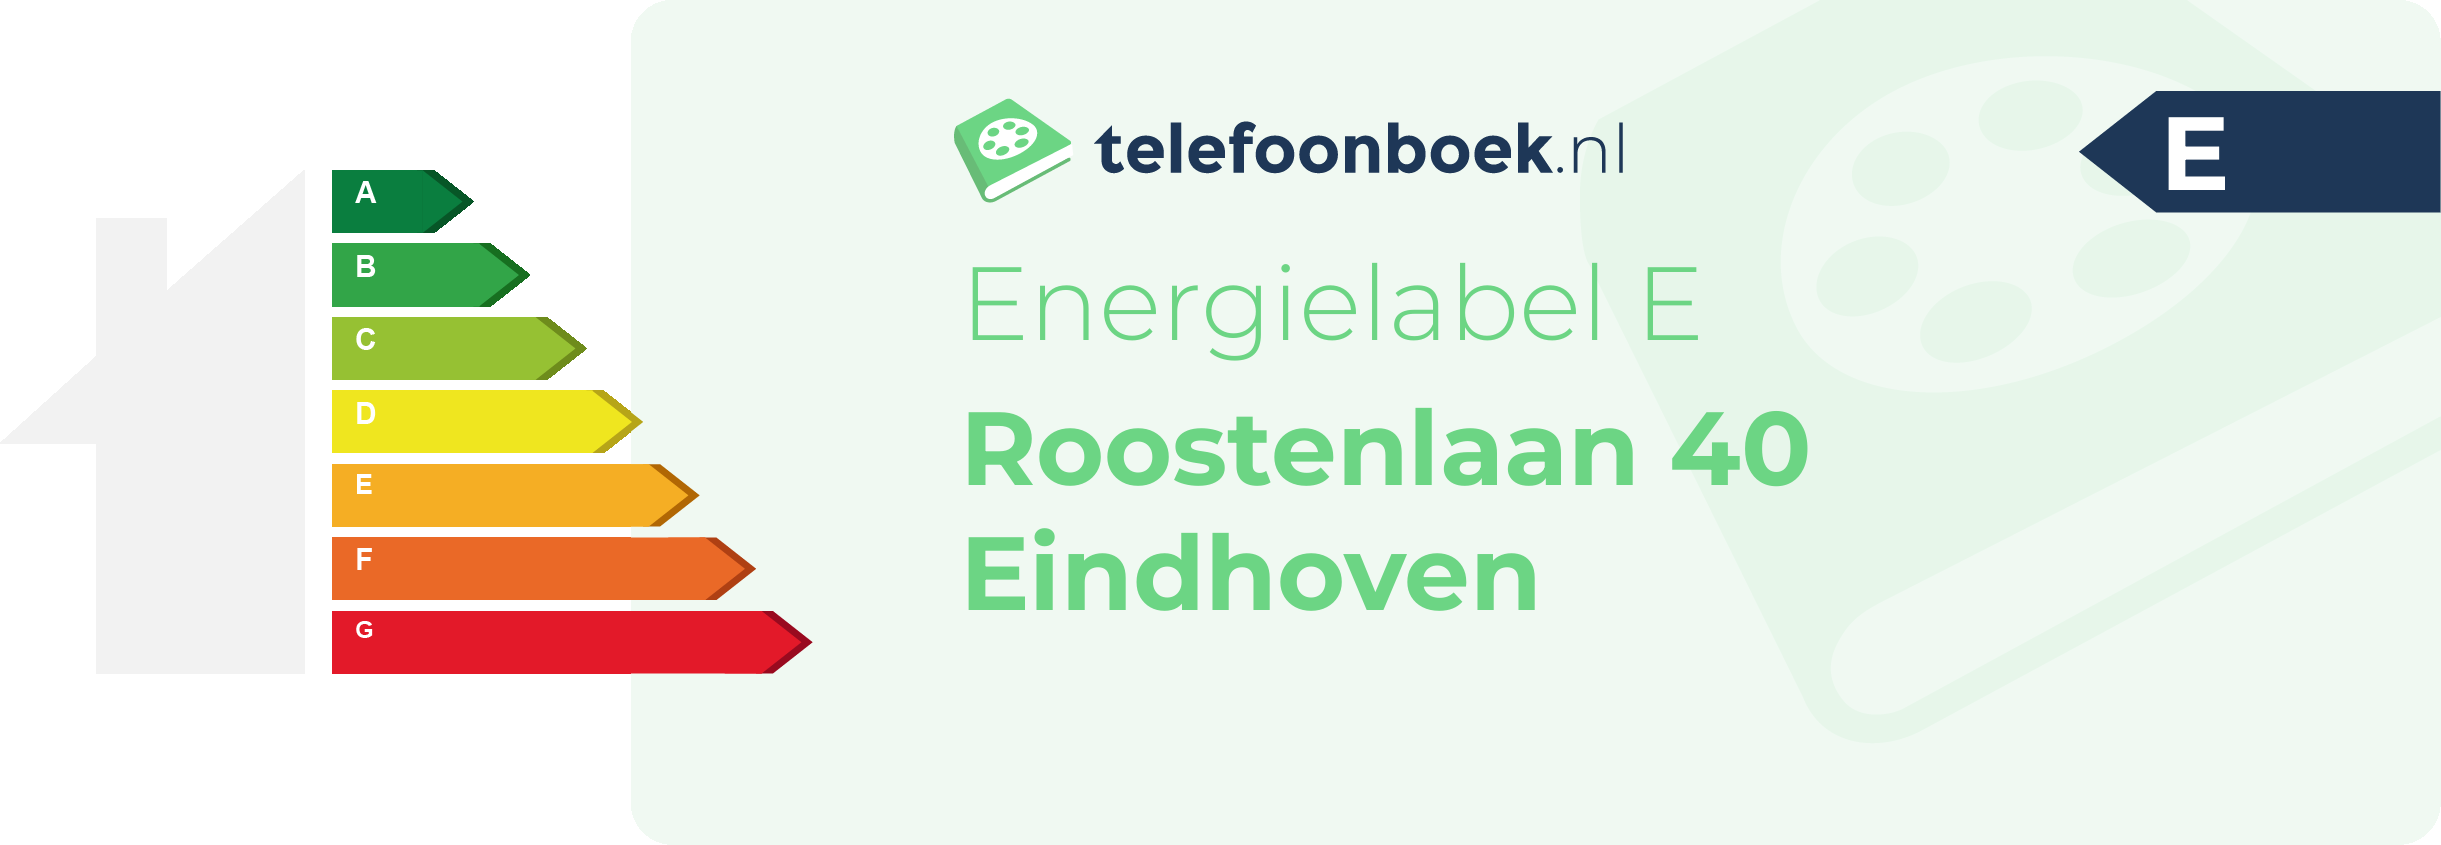 Energielabel Roostenlaan 40 Eindhoven